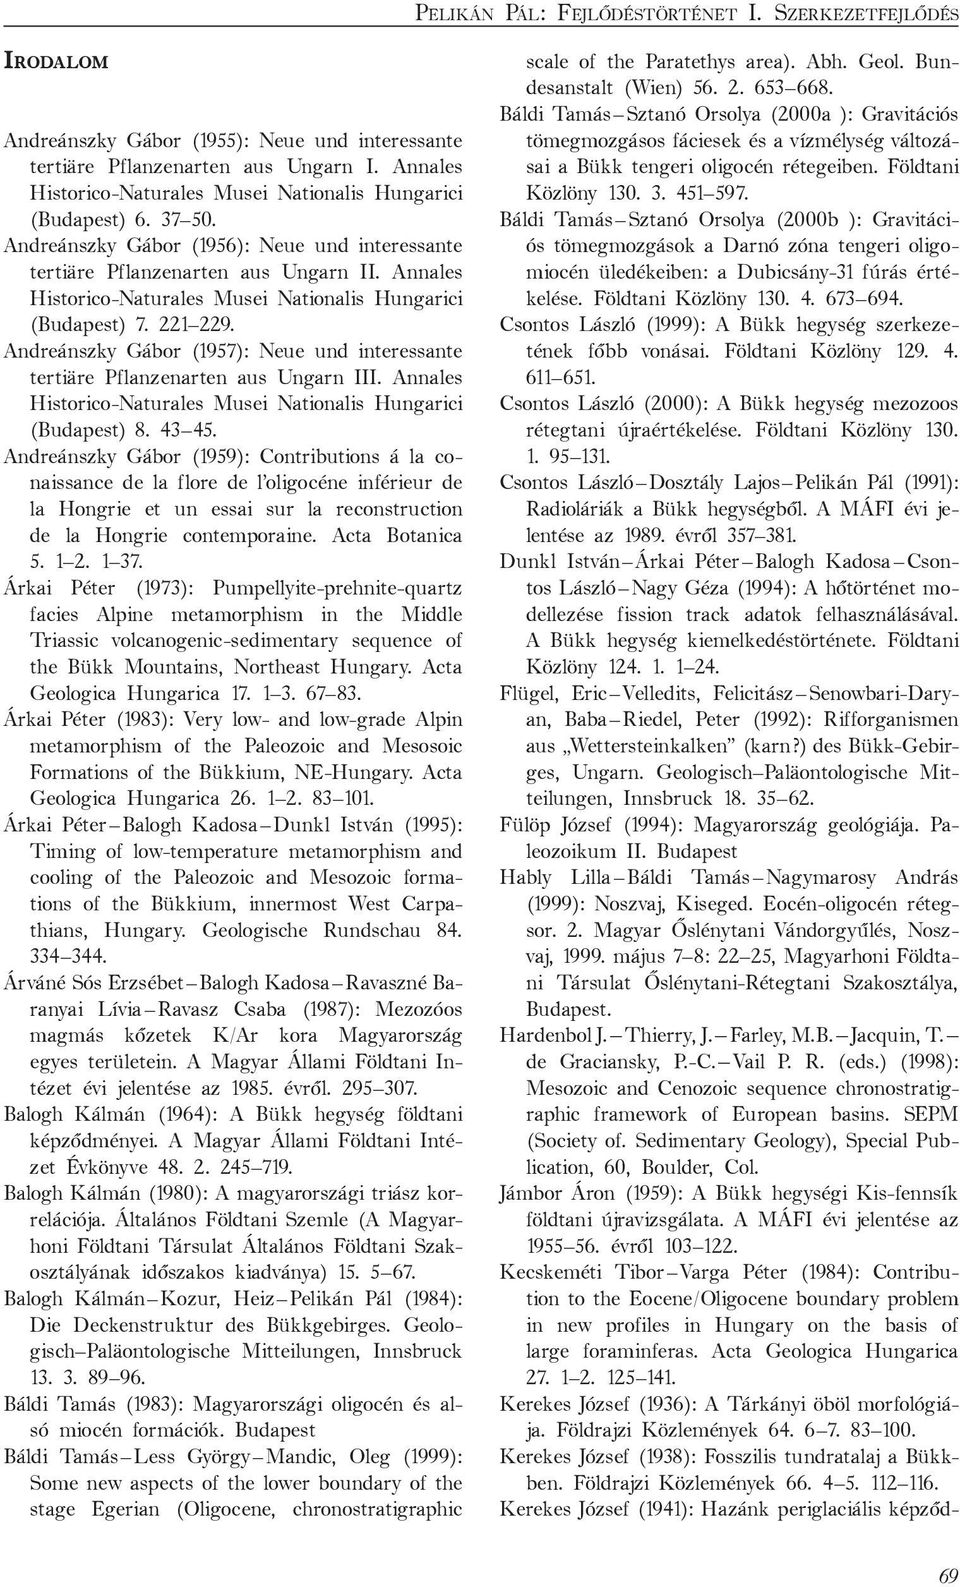 Annales Historico-Naturales Musei Nationalis Hungarici (Budapest) 7. 221 229. Andreánszky Gábor (1957): Neue und interessante tertiäre Pflanzenarten aus Ungarn III.